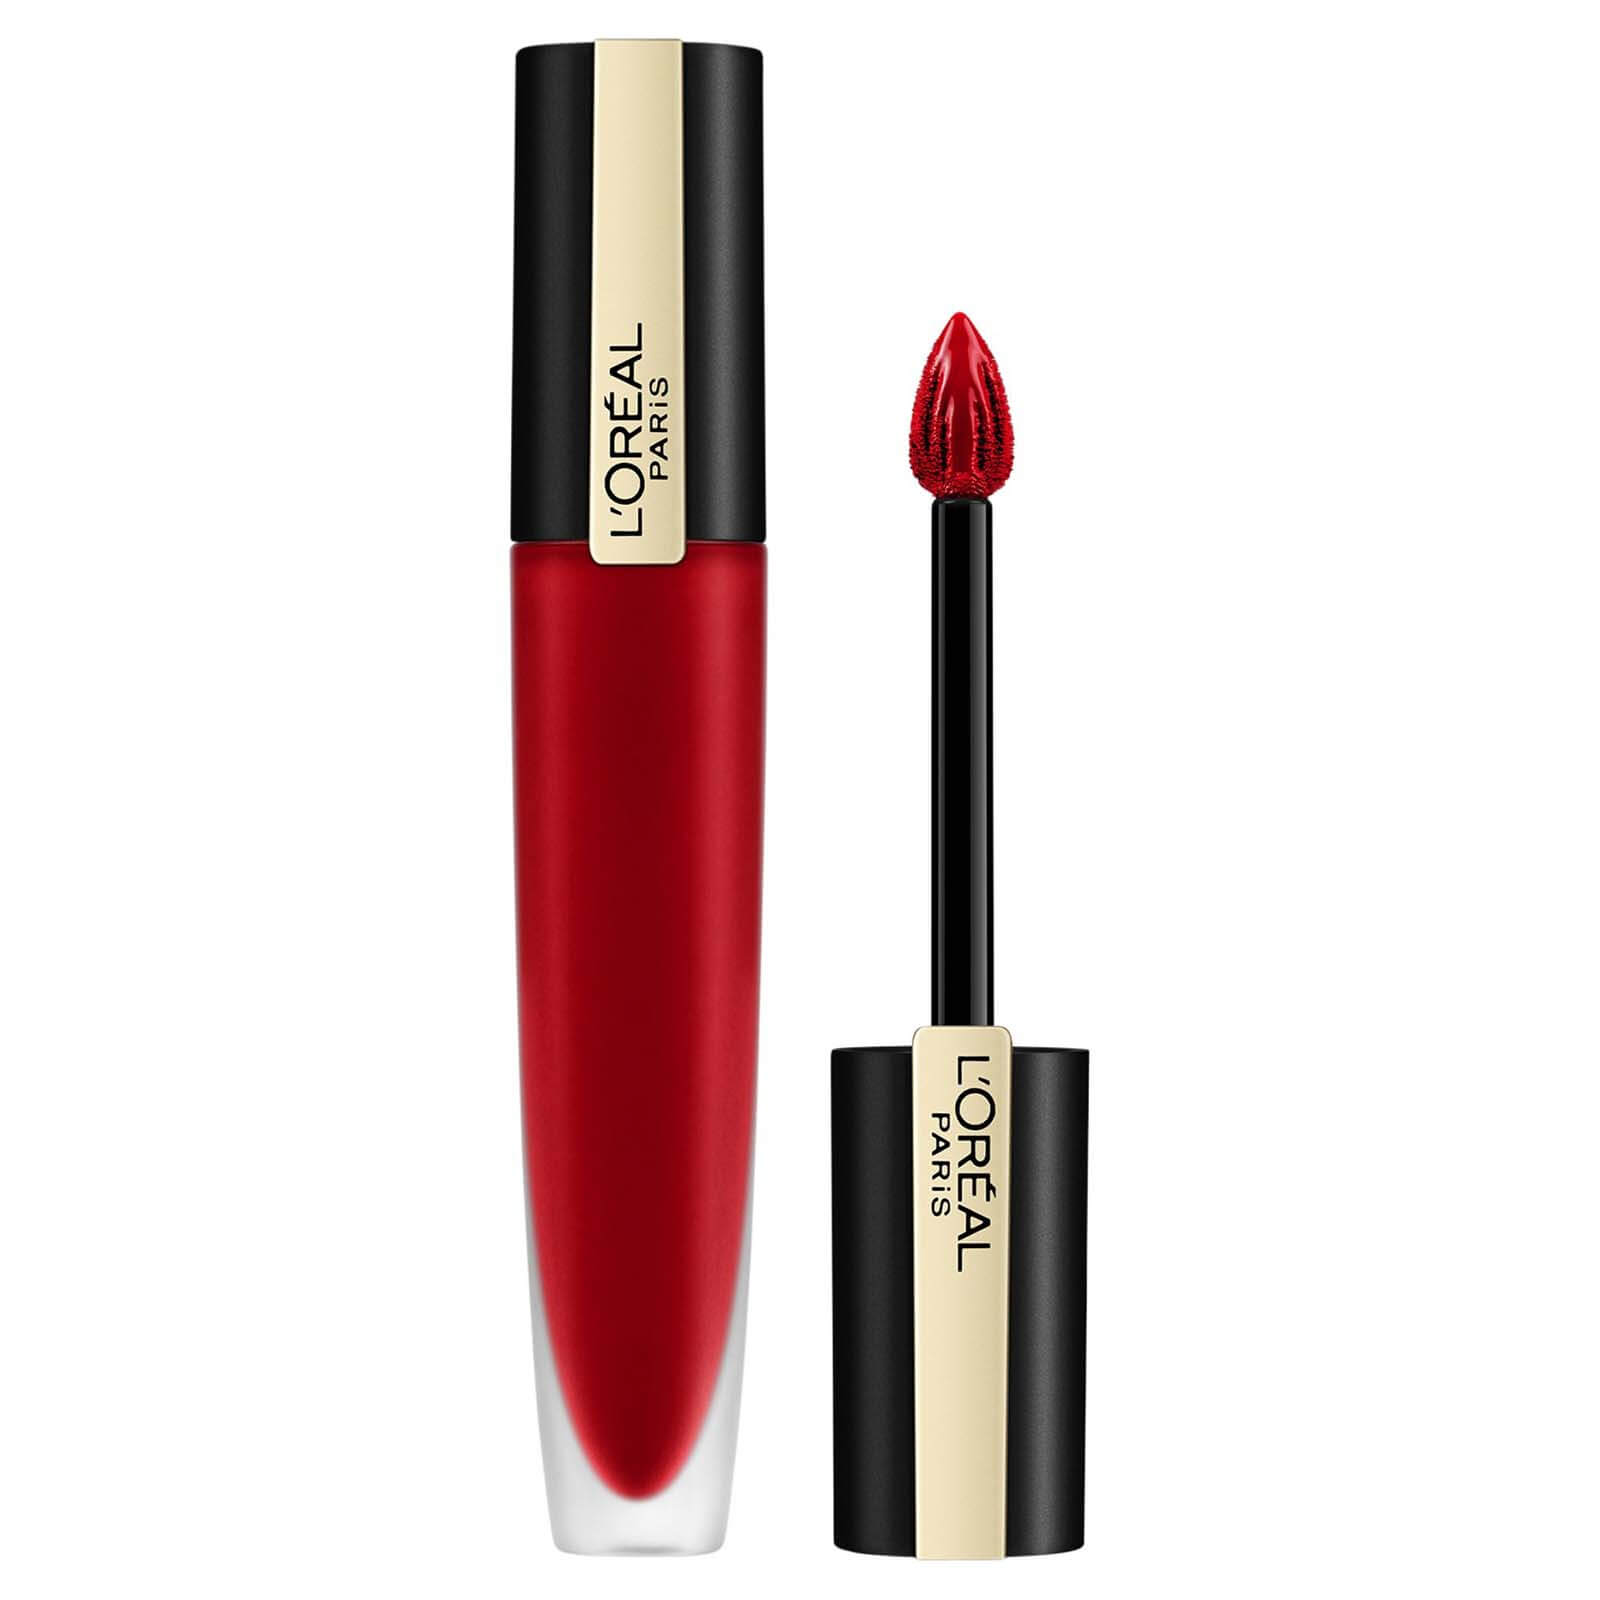 L'Oréal Paris Rouge Signature Matte Lip Ink 7ml (Various Shades) - 134 Empowe(red)